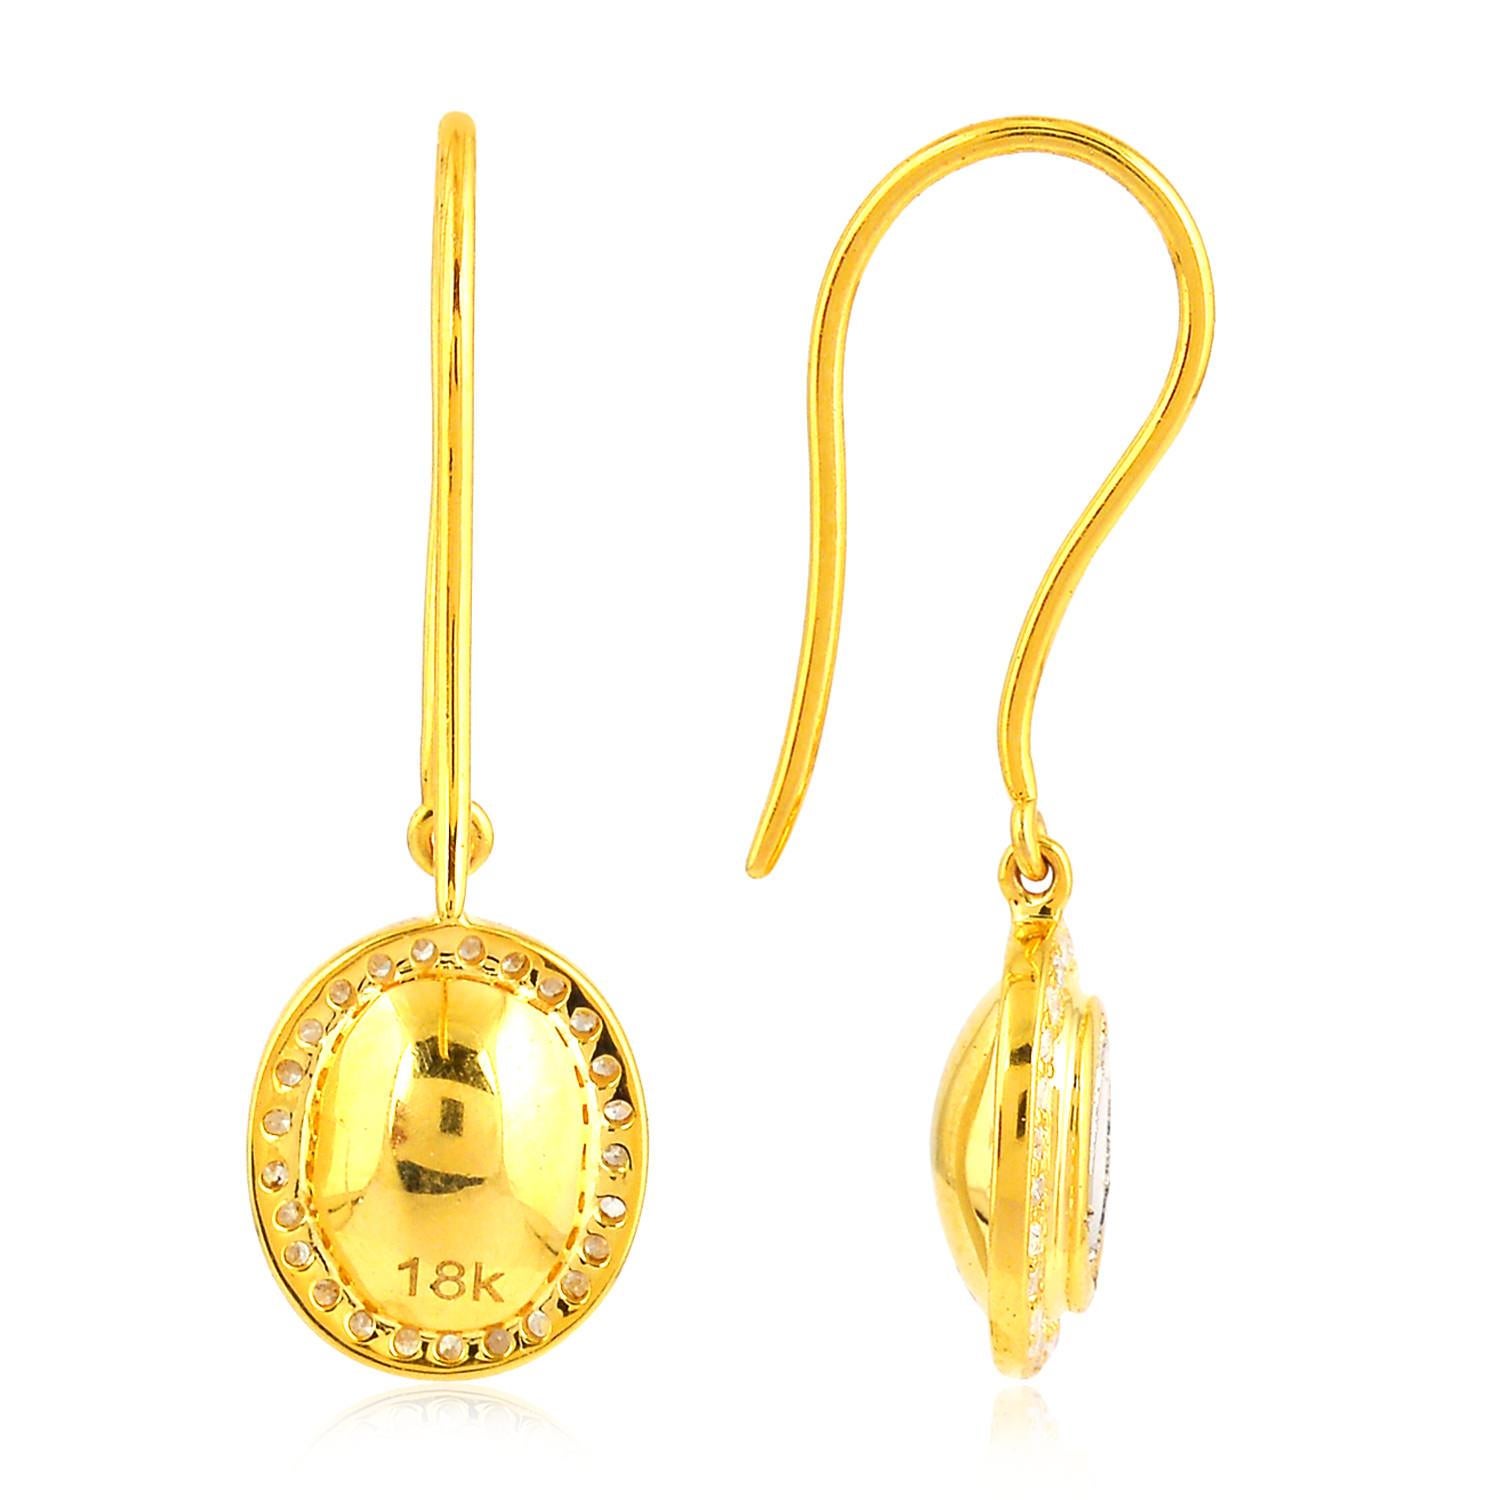 Diese handgefertigten Ohrringe aus 18-karätigem Gold sind mit 0,77 Karat Diamanten im Brillantschliff besetzt. 

FOLGEN  MEGHNA JEWELS Storefront, um die neueste Kollektion und exklusive Stücke zu sehen.  Meghna Jewels ist stolz darauf, Top-Anbieter